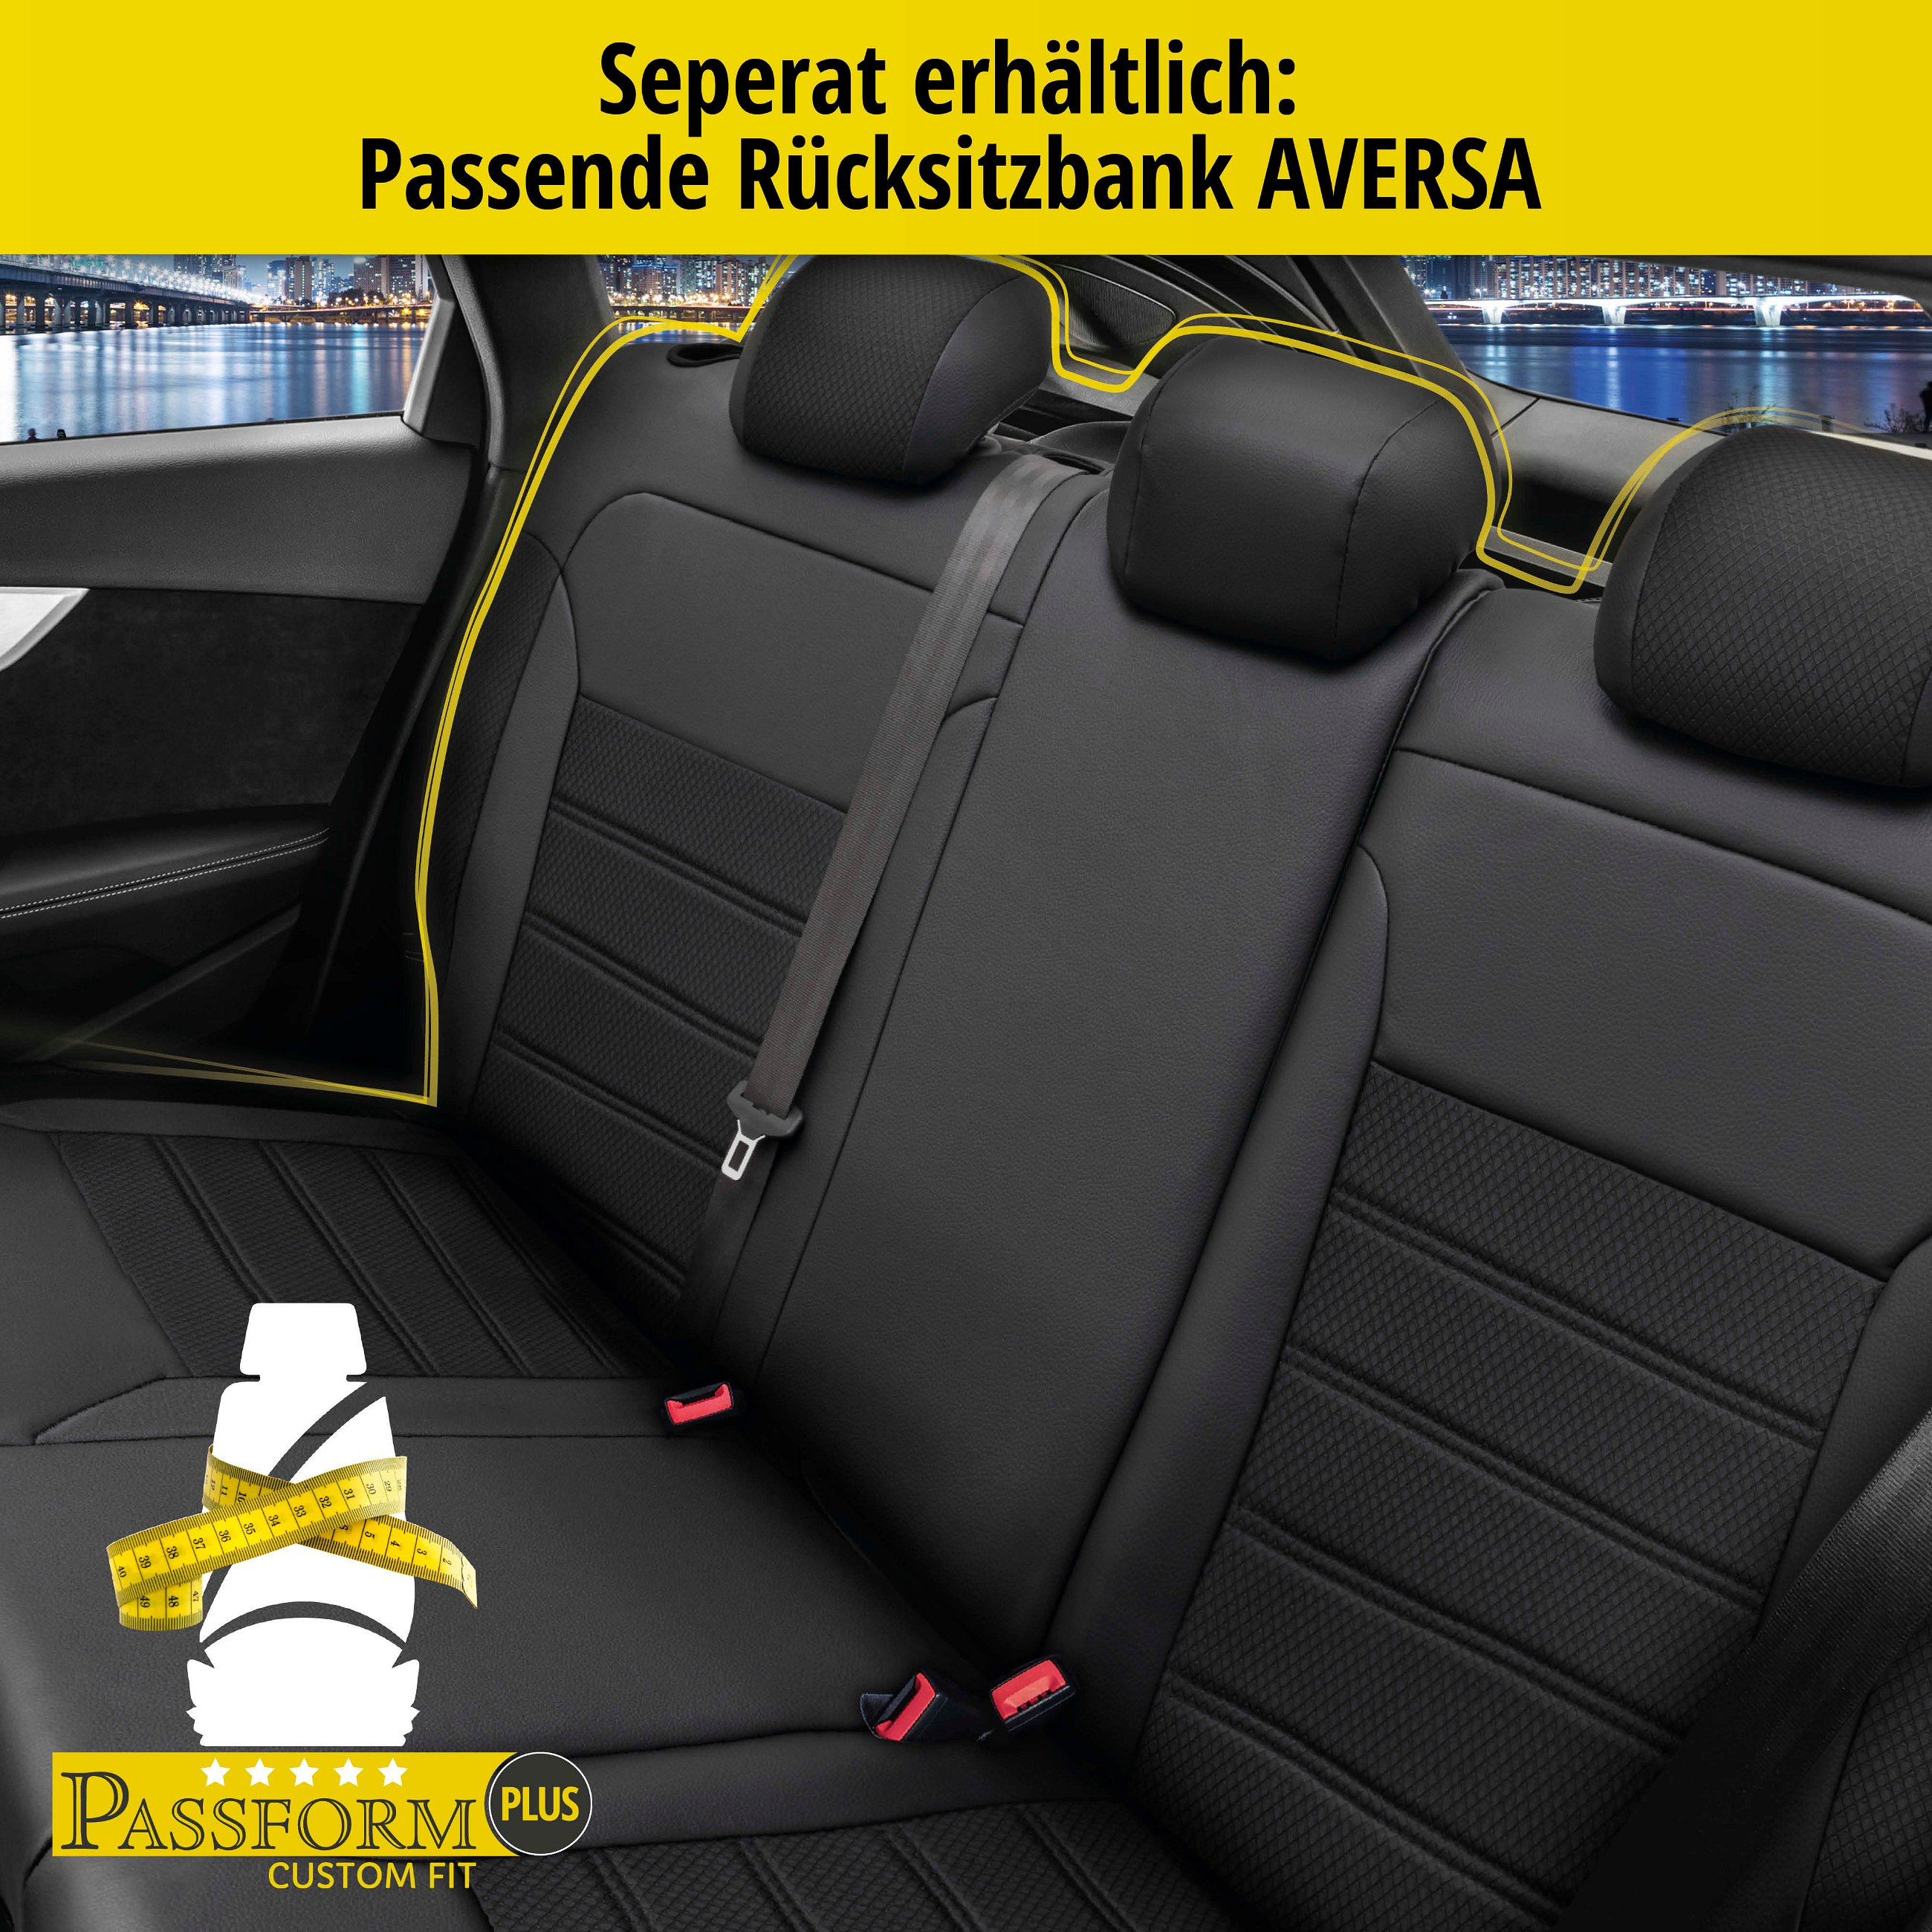 Passform Sitzbezug Aversa für Seat Ateca 04/2016-Heute, 2 Einzelsitzbezüge für Sportsitze